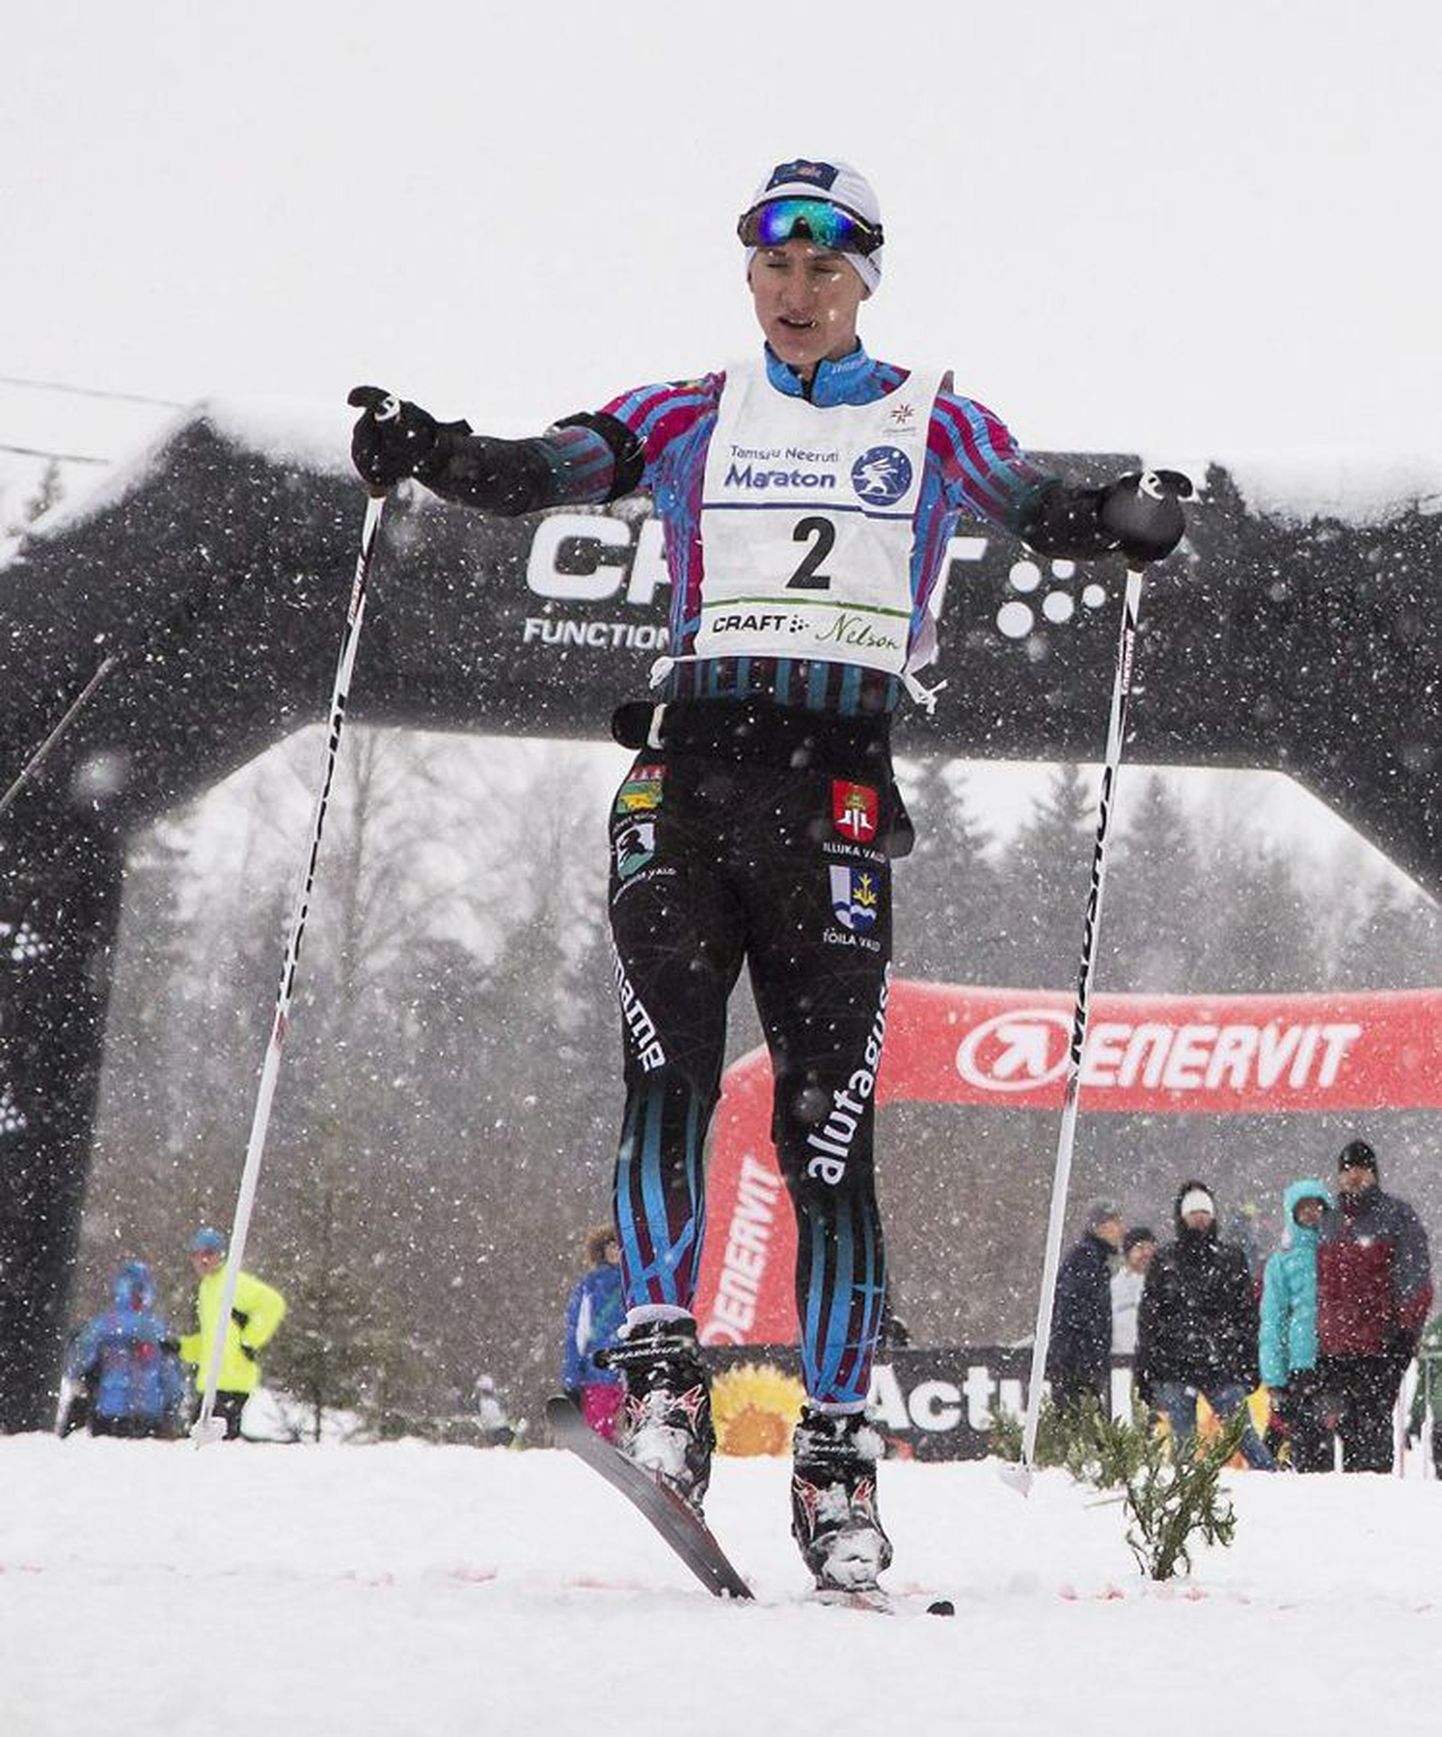 Viljandis suusaspordiga alustanud Morten Priks tunnistati Estoloppeti sarja parimaks meessuusatajaks. Pilt on tehtud 1. veebruaril sõidetud Tamsalu-Neeruti maratoni finišis, kuhu noormees jõudis esimese lõpetajana.